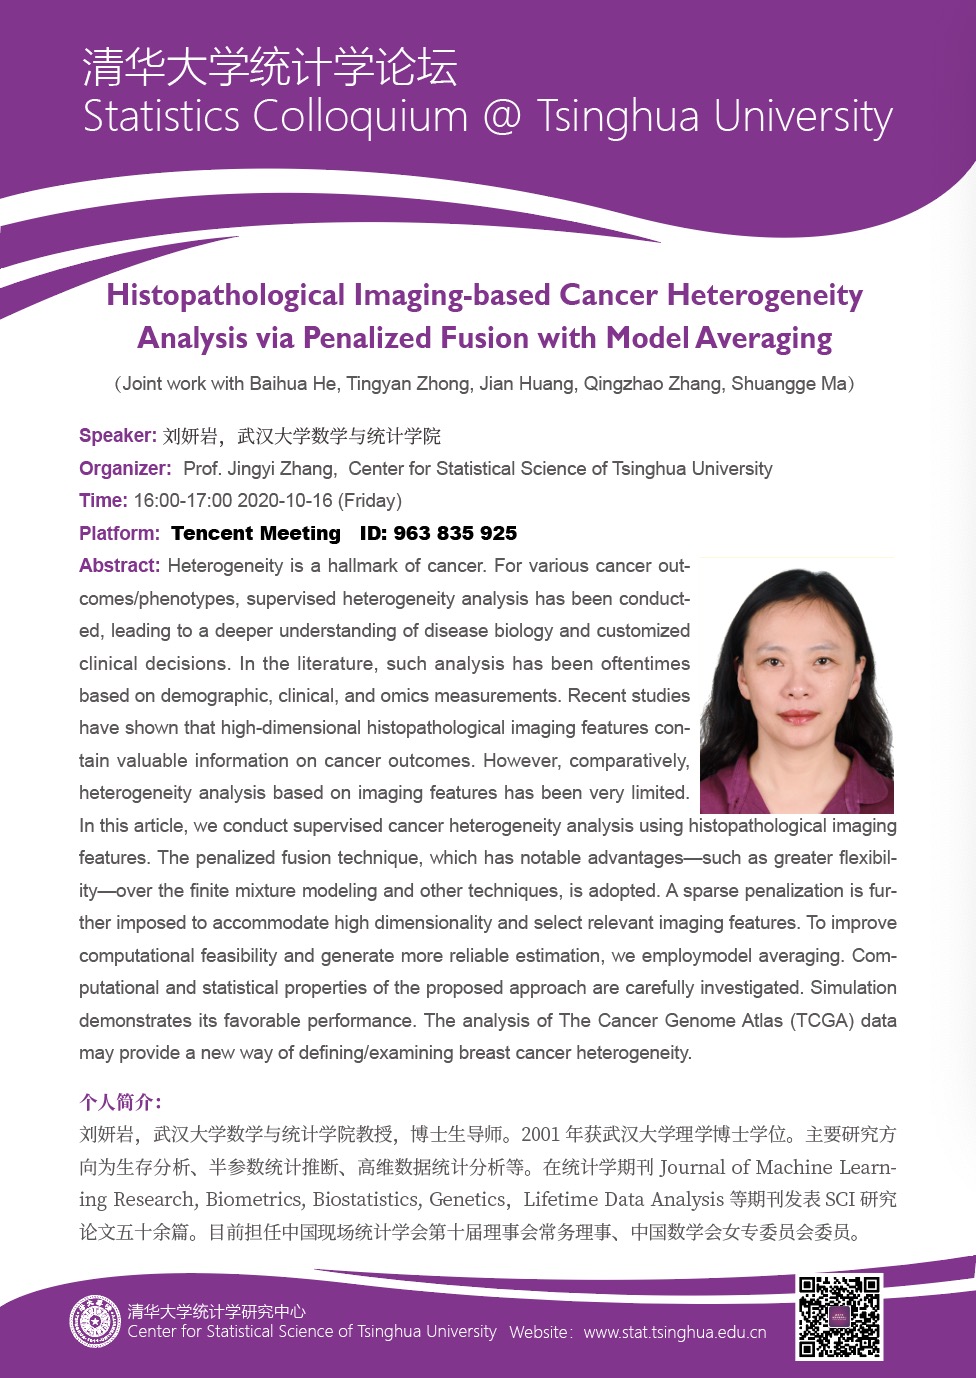 Histopathological Imaging-based Cancer Heterogeneity Analysis via Penalized Fusion with Model Averaging